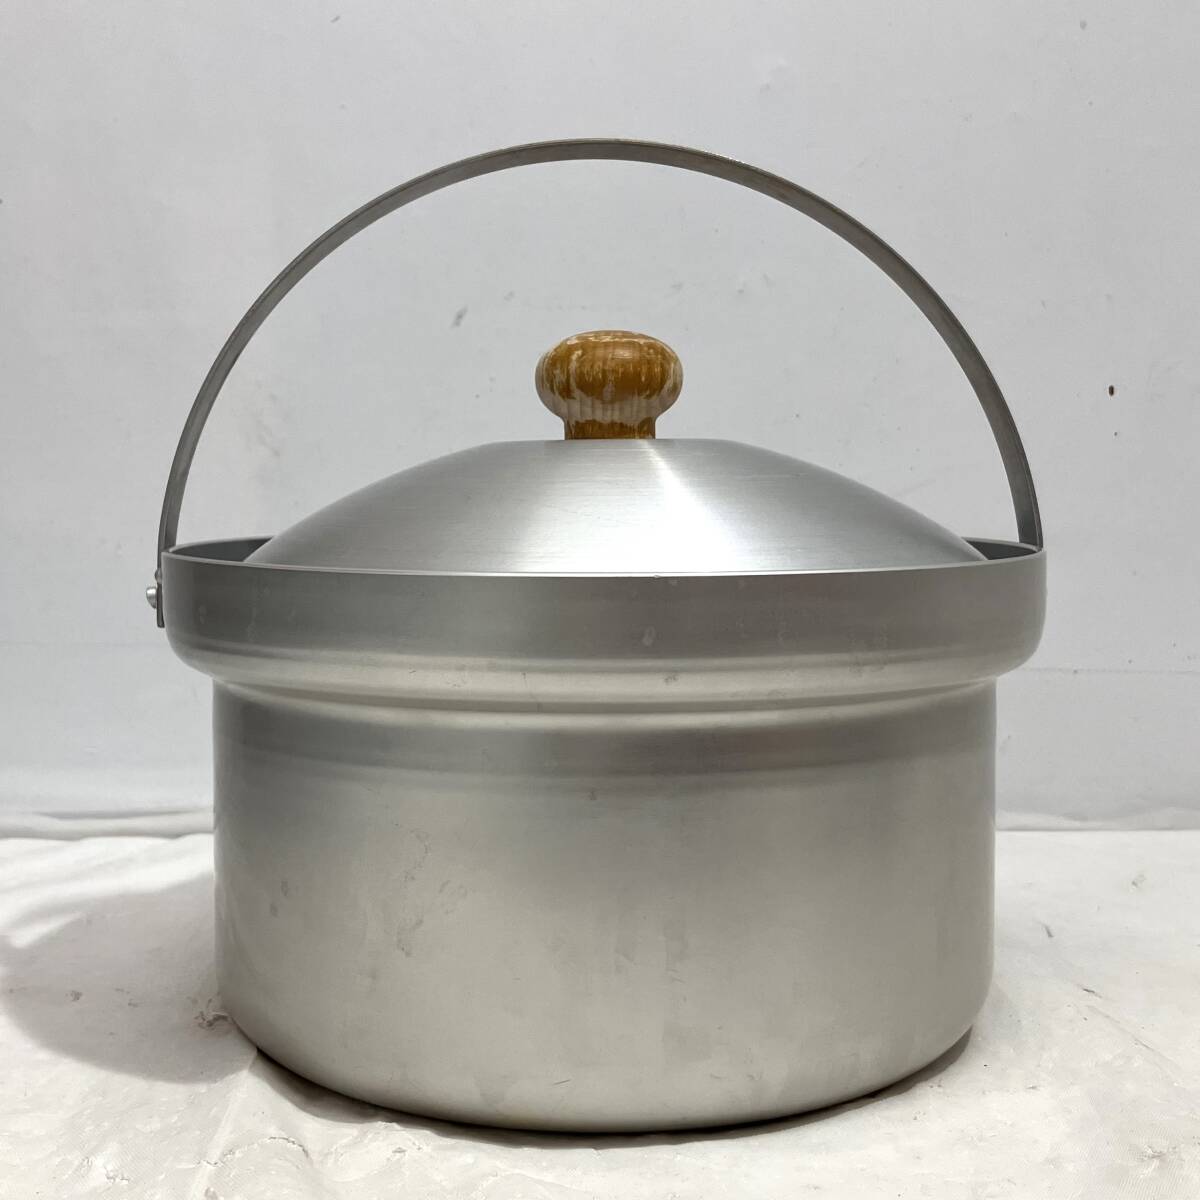 (志木)UNIFLAME/ユニフレーム fanライスクッカーDX 5合炊き 鍋 調理器具 キャンプ アウトドア _画像2